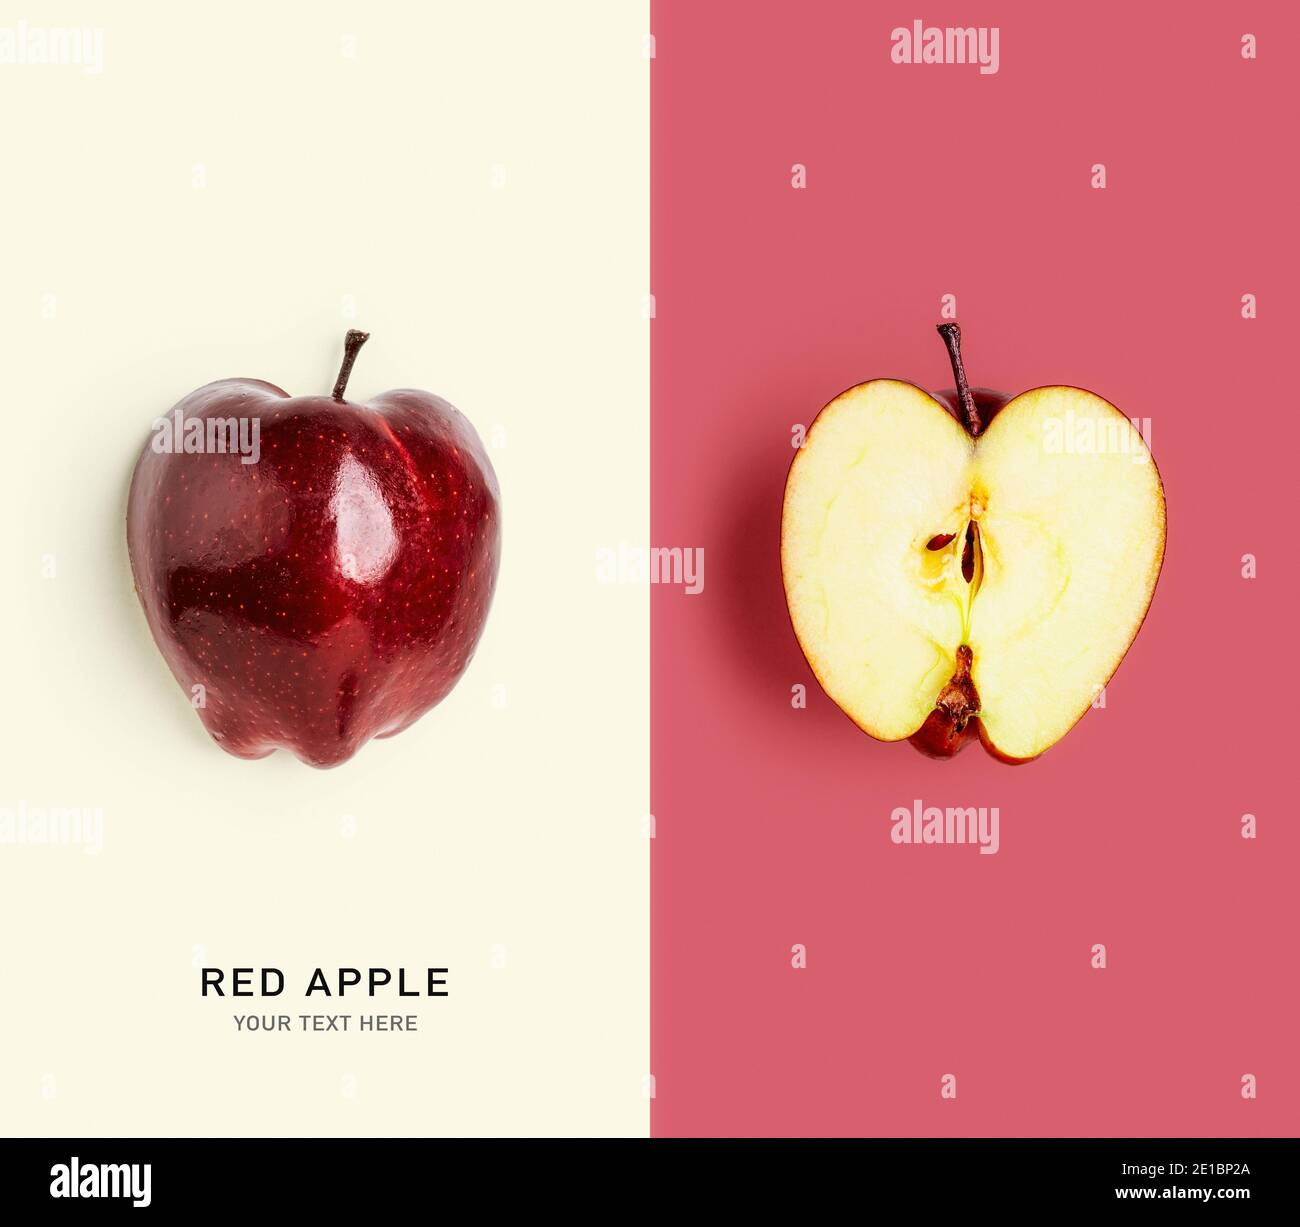 Frutta fresca rossa mela layout creativo. Alimentazione sana, dieta e concetto di cibo. Disposizione piatta, vista dall'alto. Elementi di progettazione, scheda a colori con spazio di copia Foto Stock